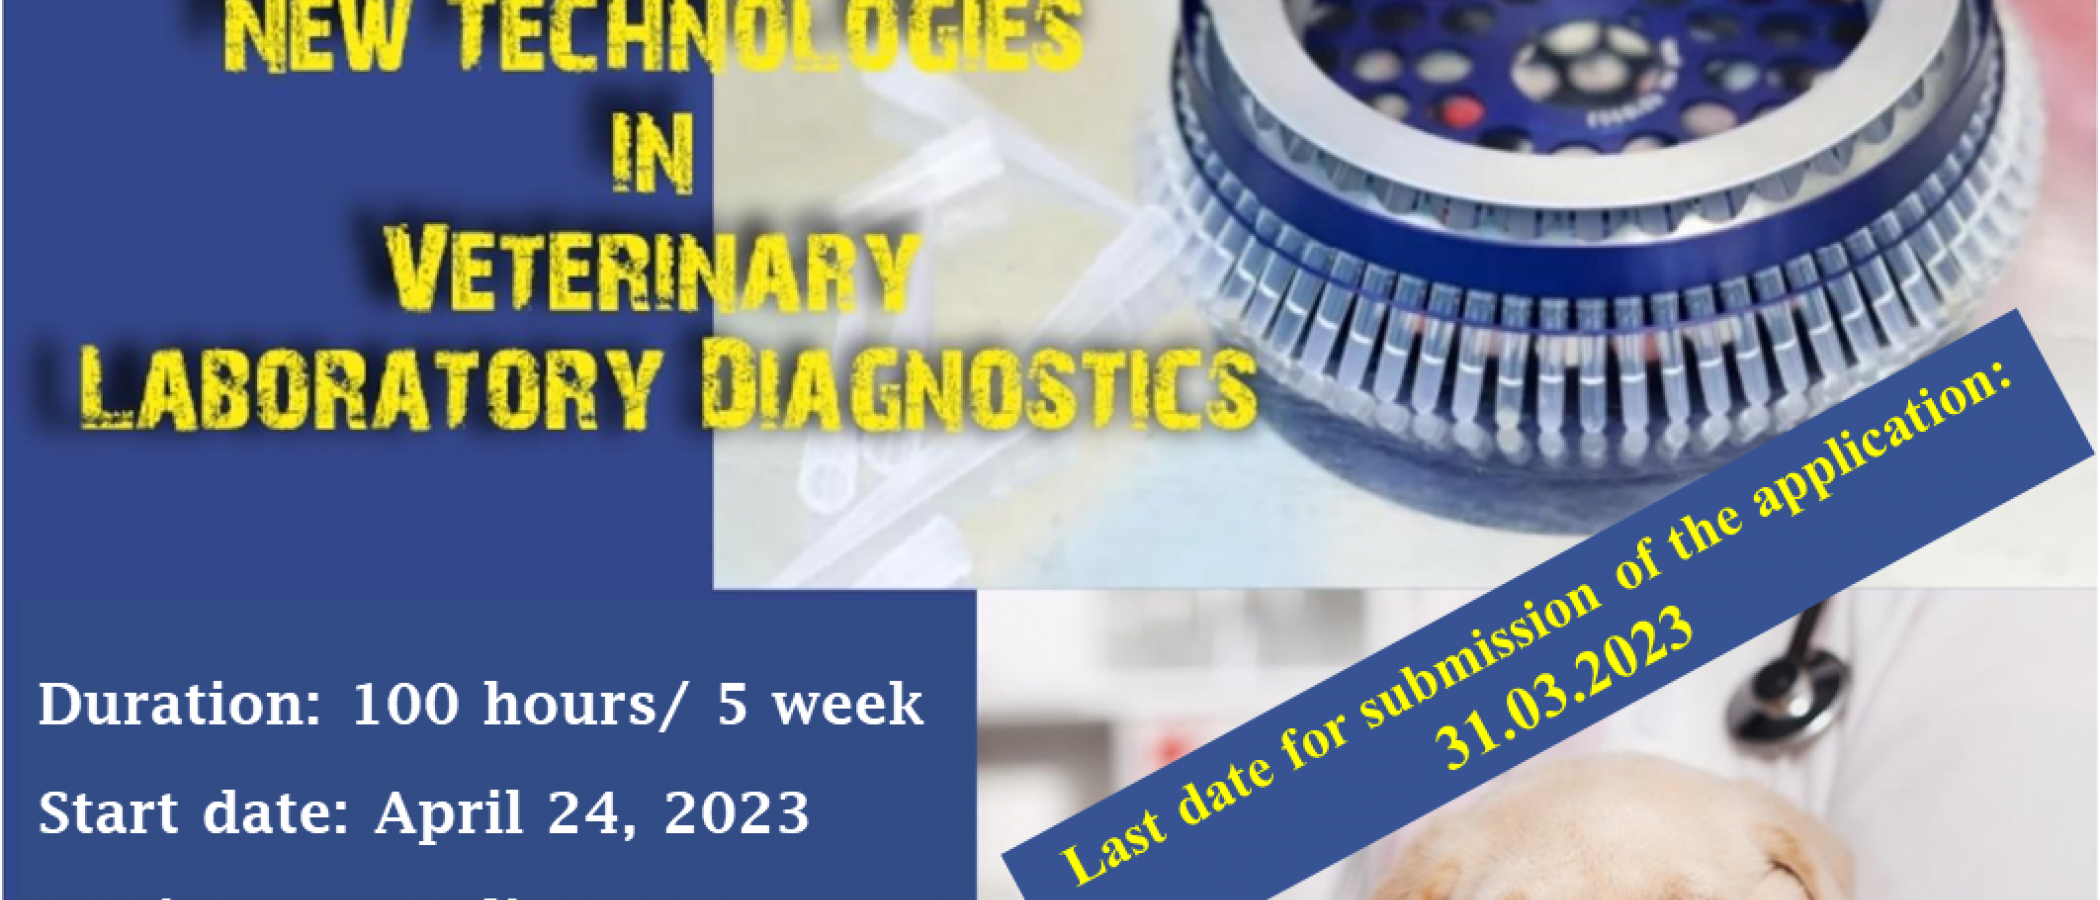 New Technologies in Veterinary Laboratory Diagnostics